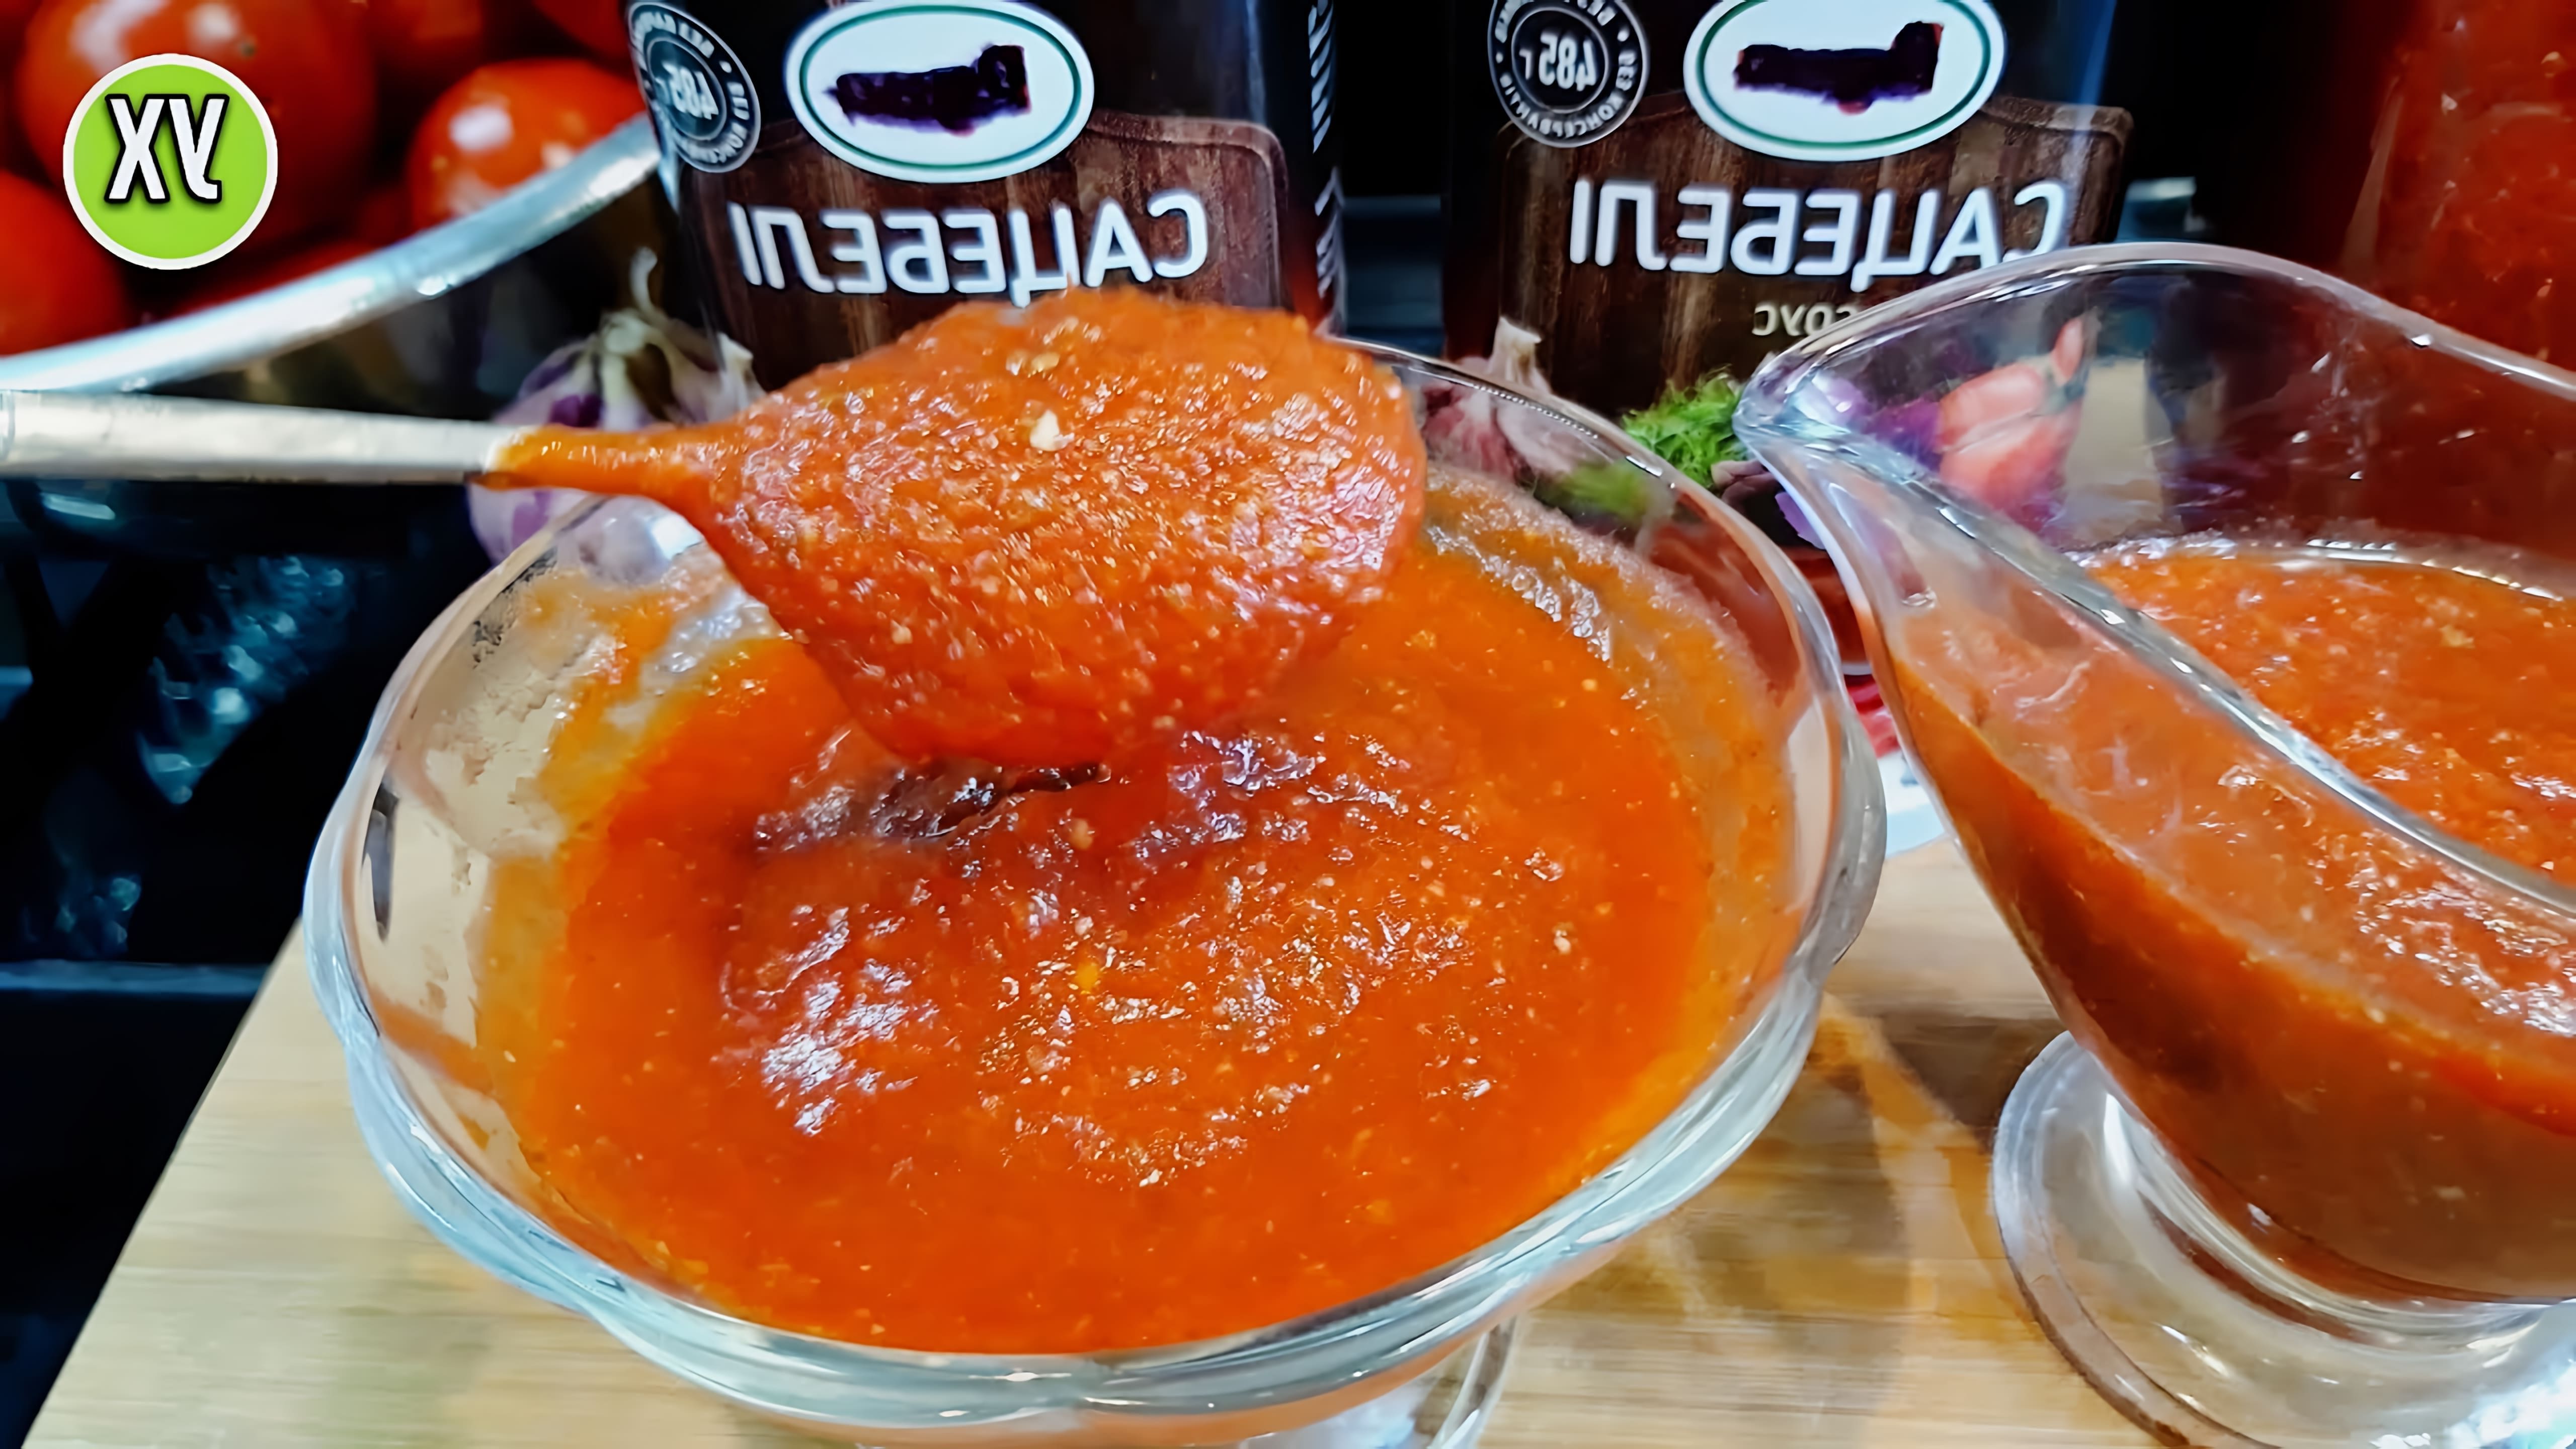 Простой и быстрый рецепт вкусного ароматно-пряного томатного соуса, мы любим его к мясу, к рыбе или просто с пастой. 